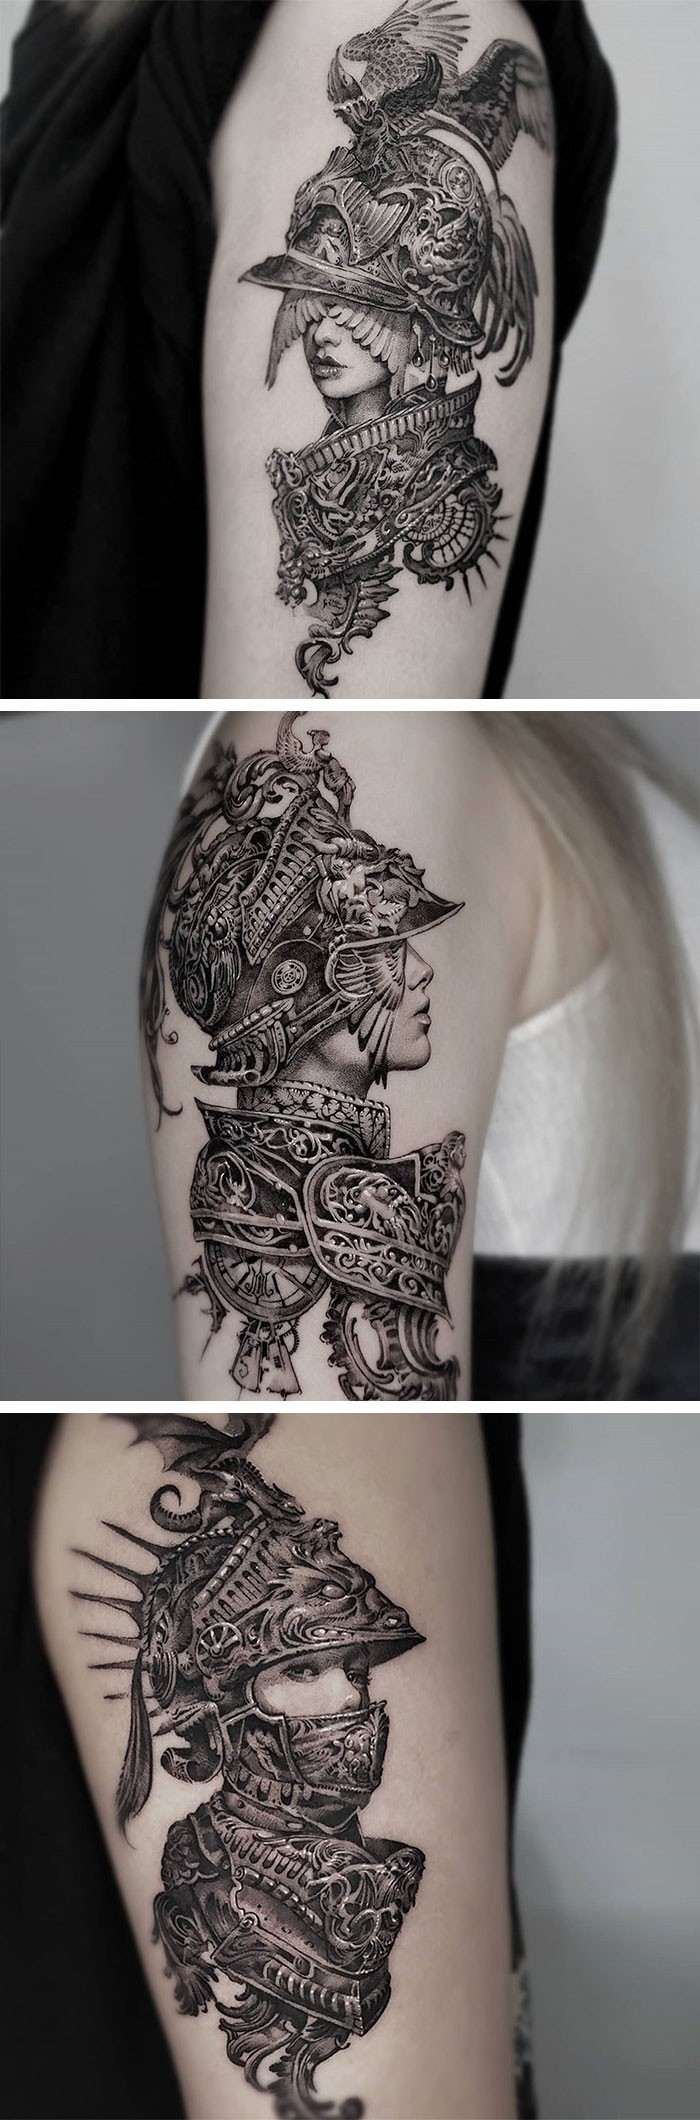 Tatuaże rycerzy autorstwa Tattooist Hwi